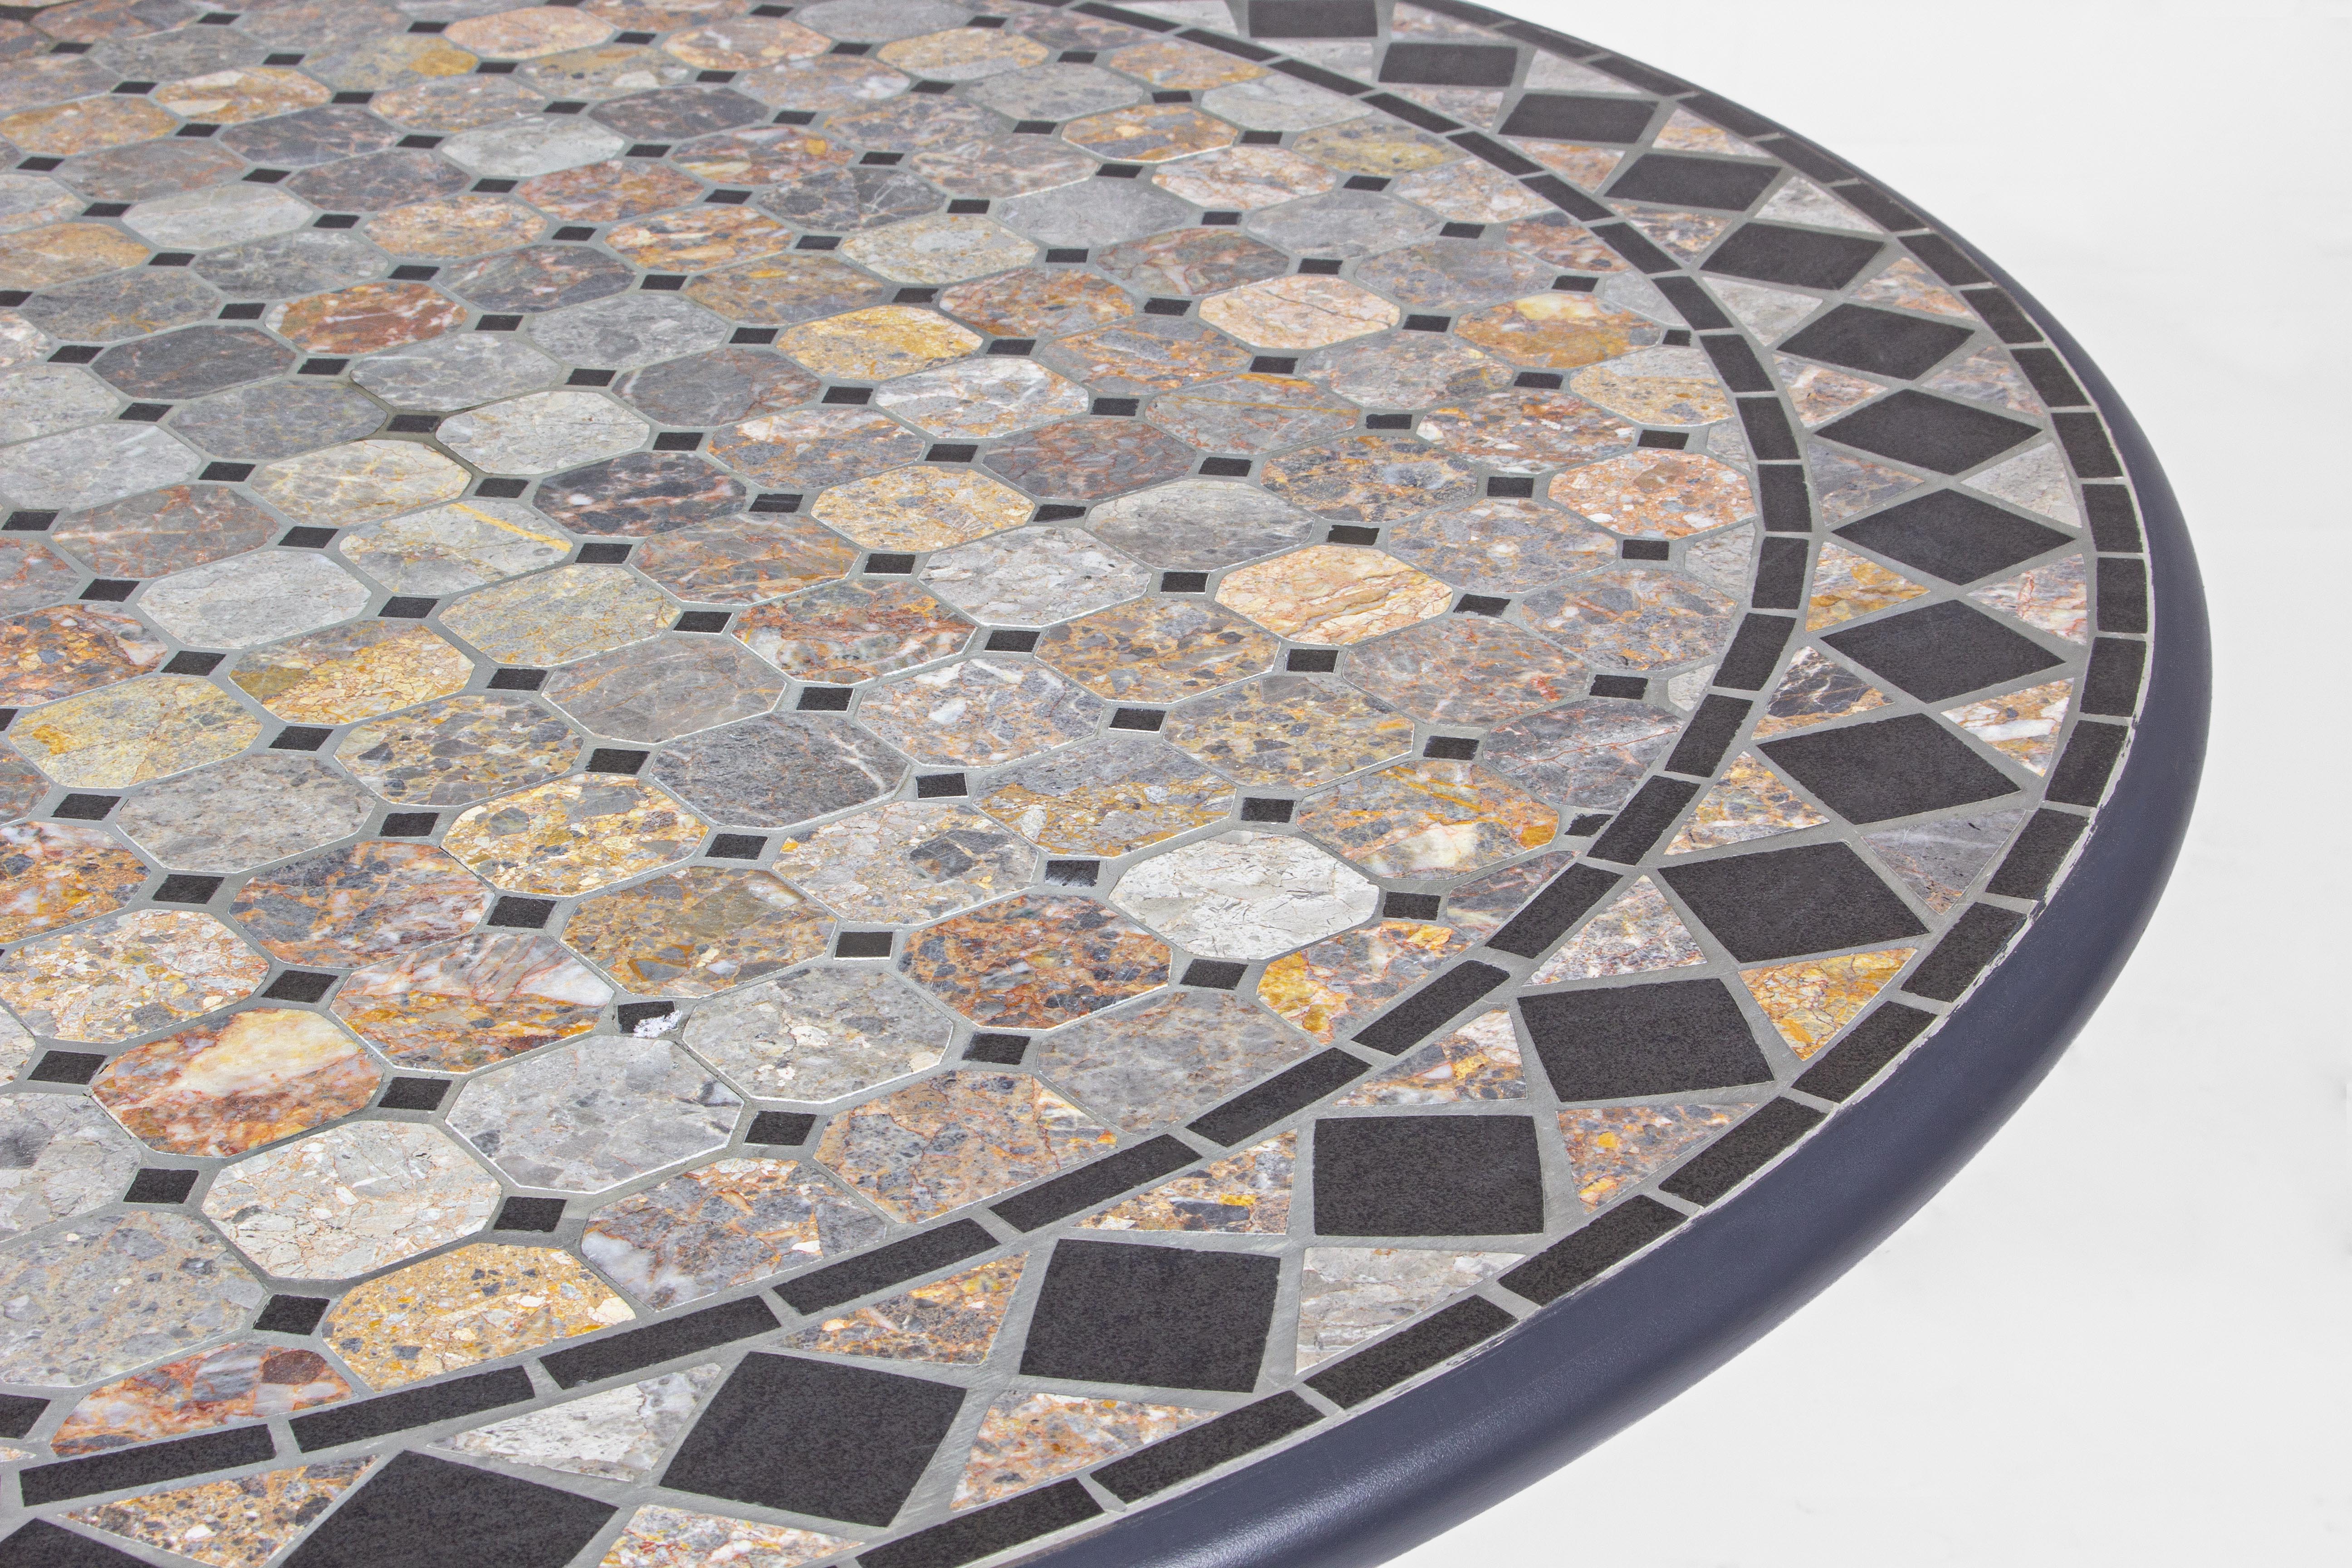 Tavolo rotondo in ferro con mosaico in ceramica Ø 120 cm Berkley